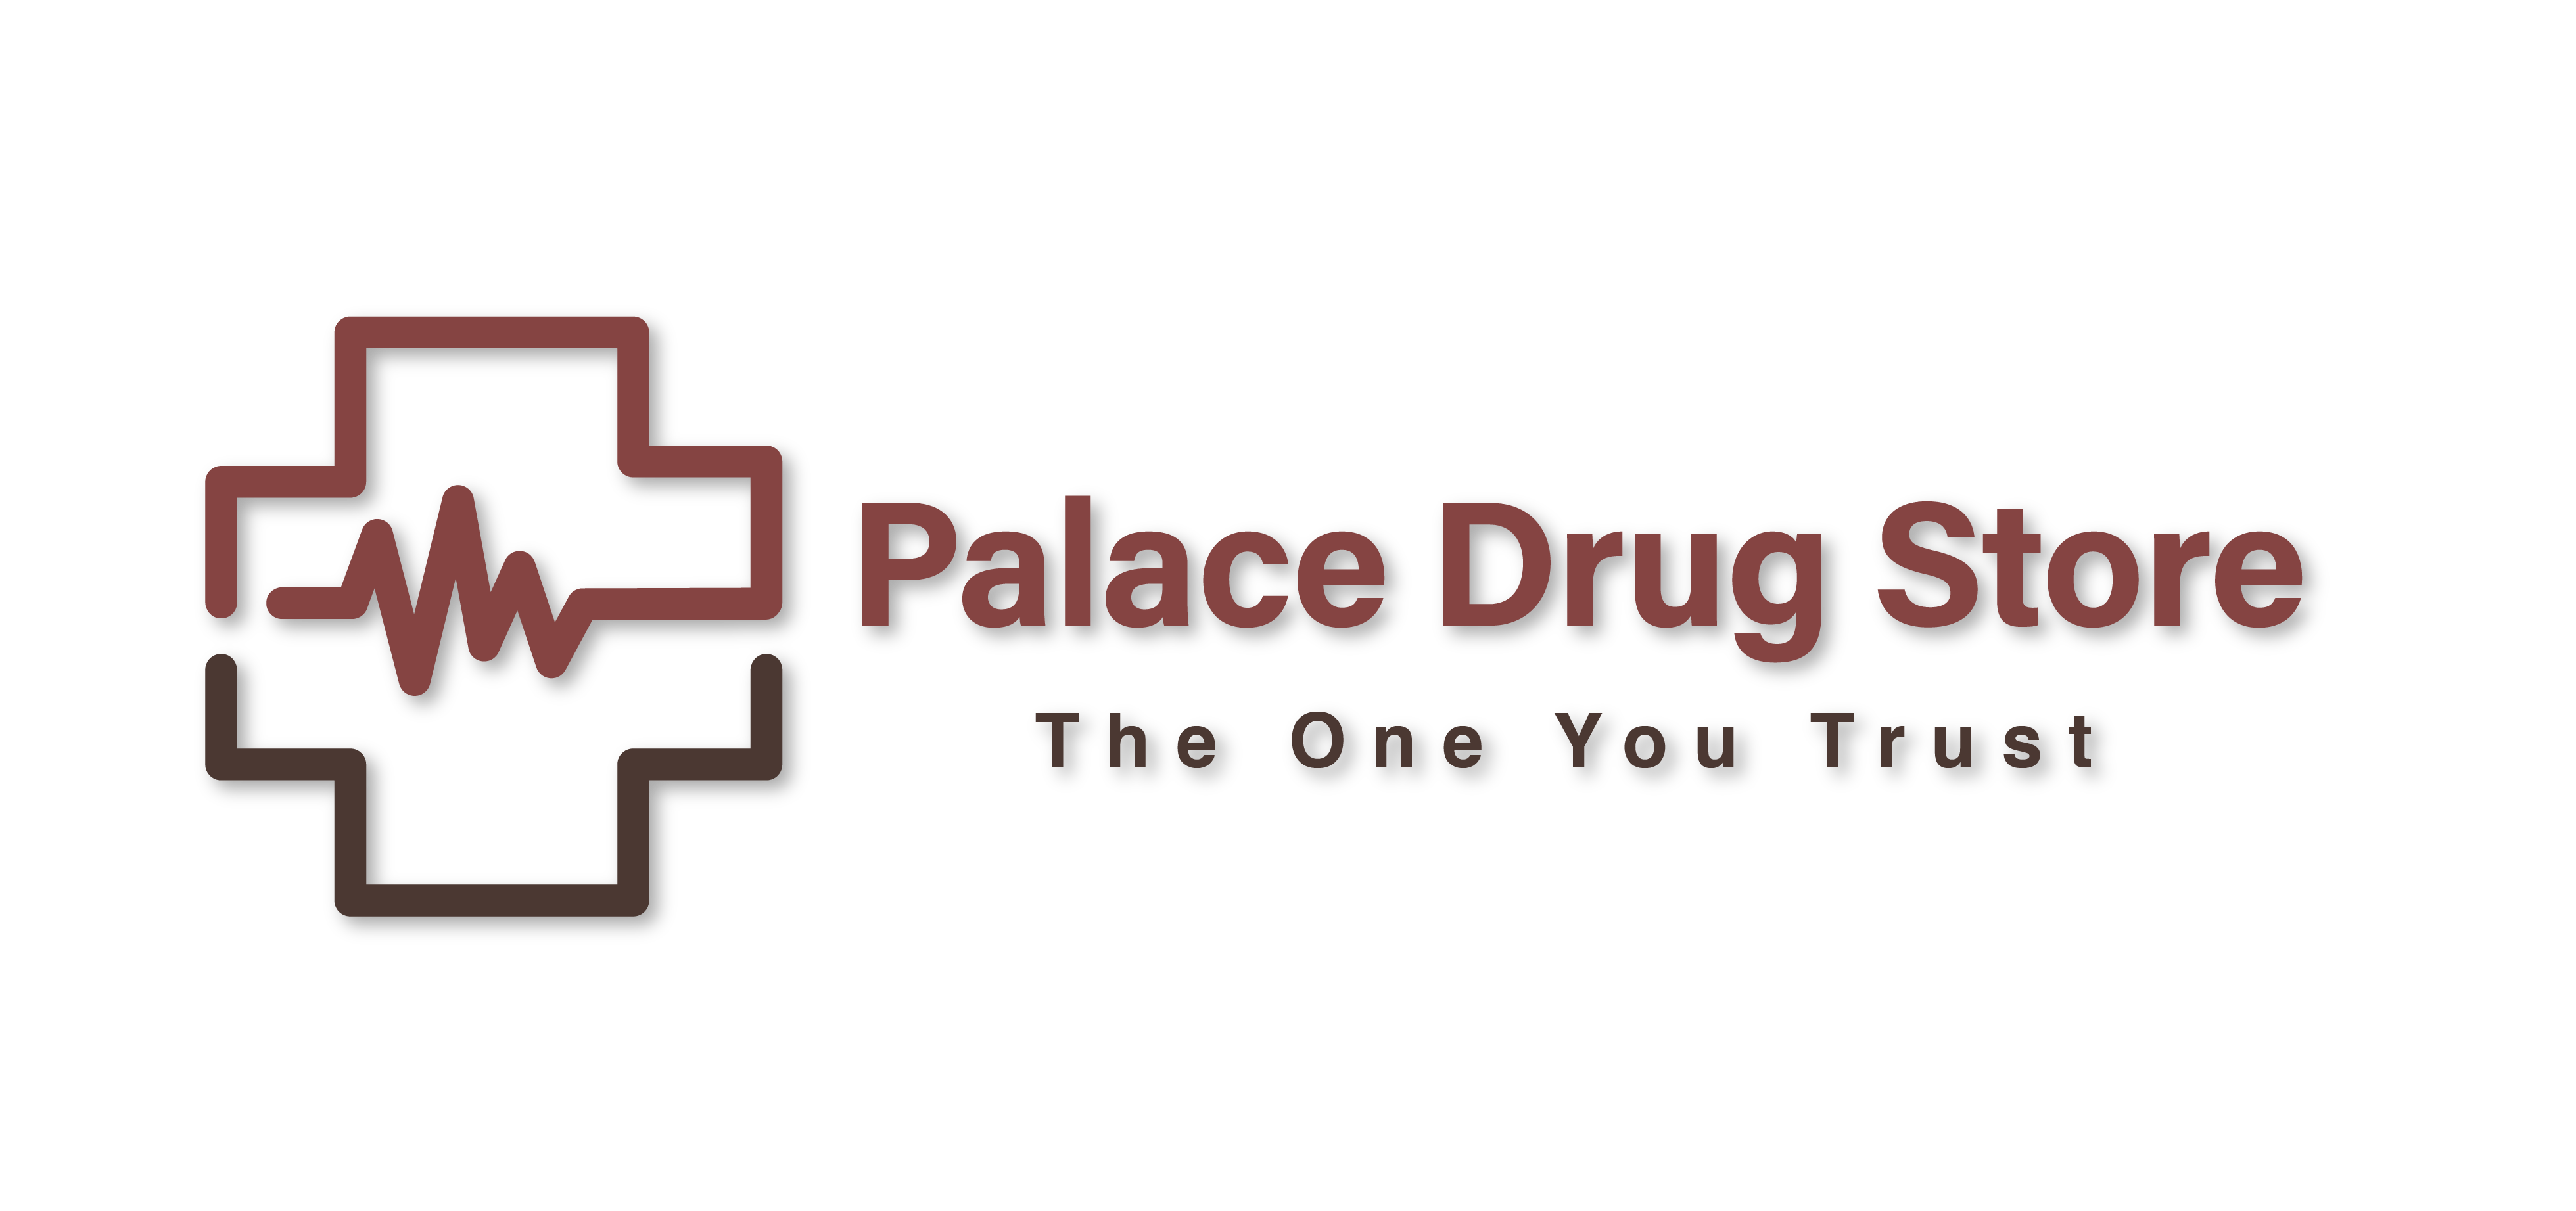 Palace Drug Store